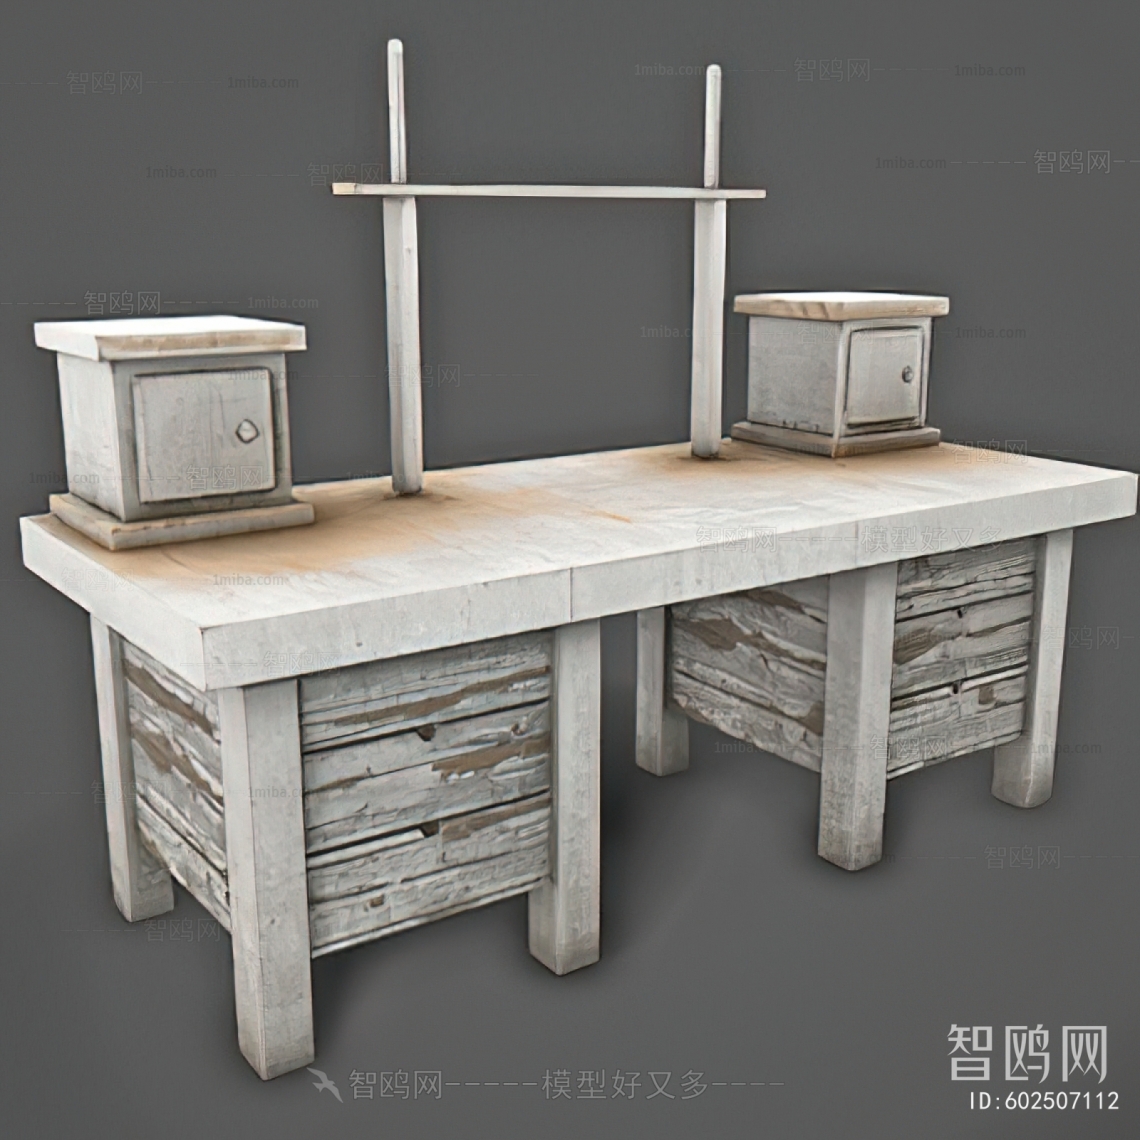 Wabi-sabi Style Desk